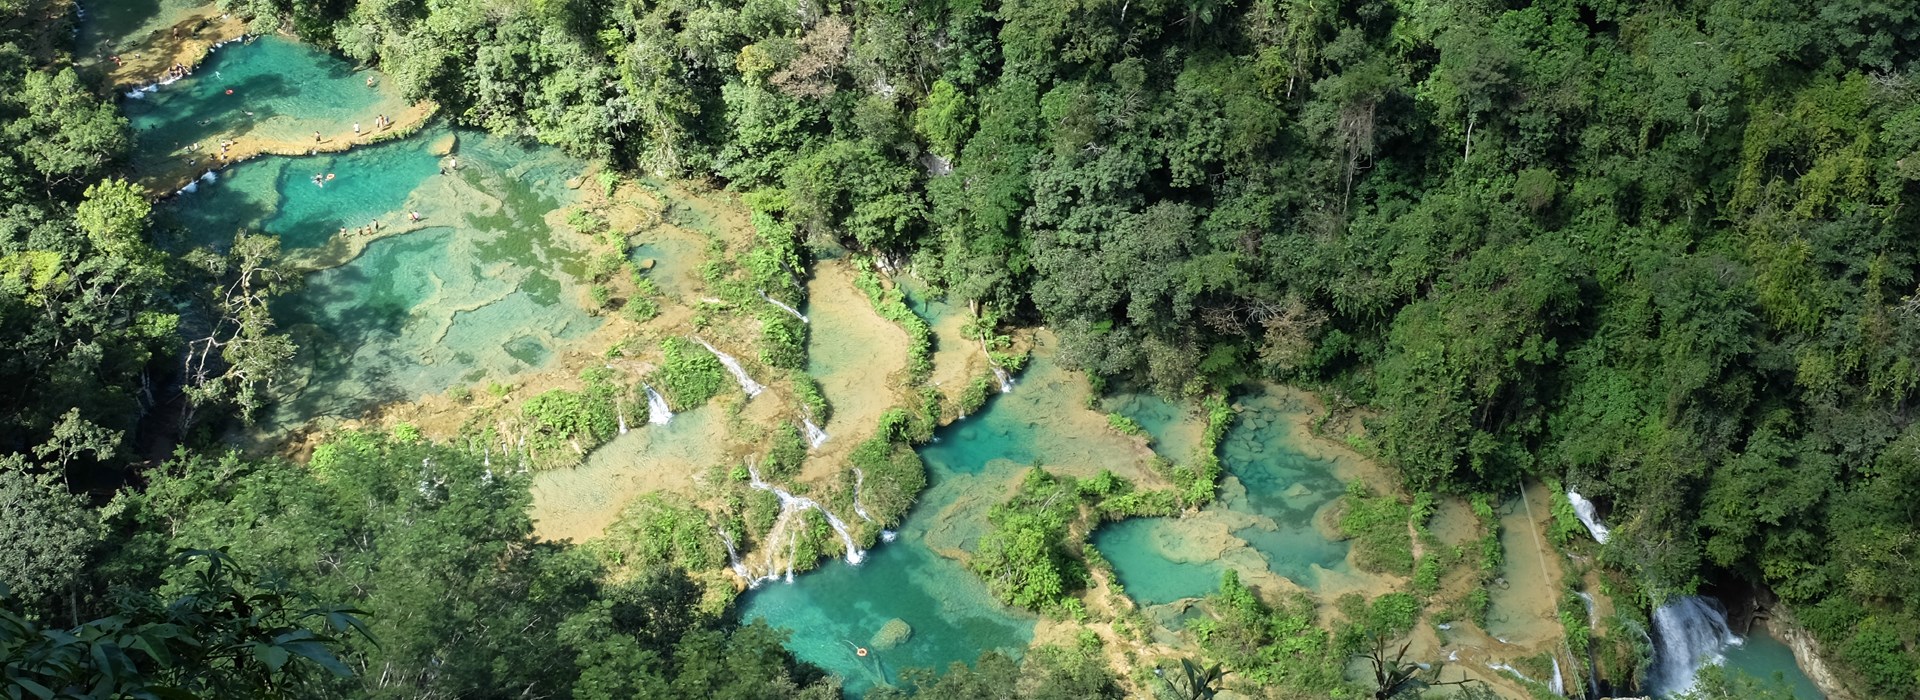 Visiter Le parc naturel de Semuc Champey - Guatemala